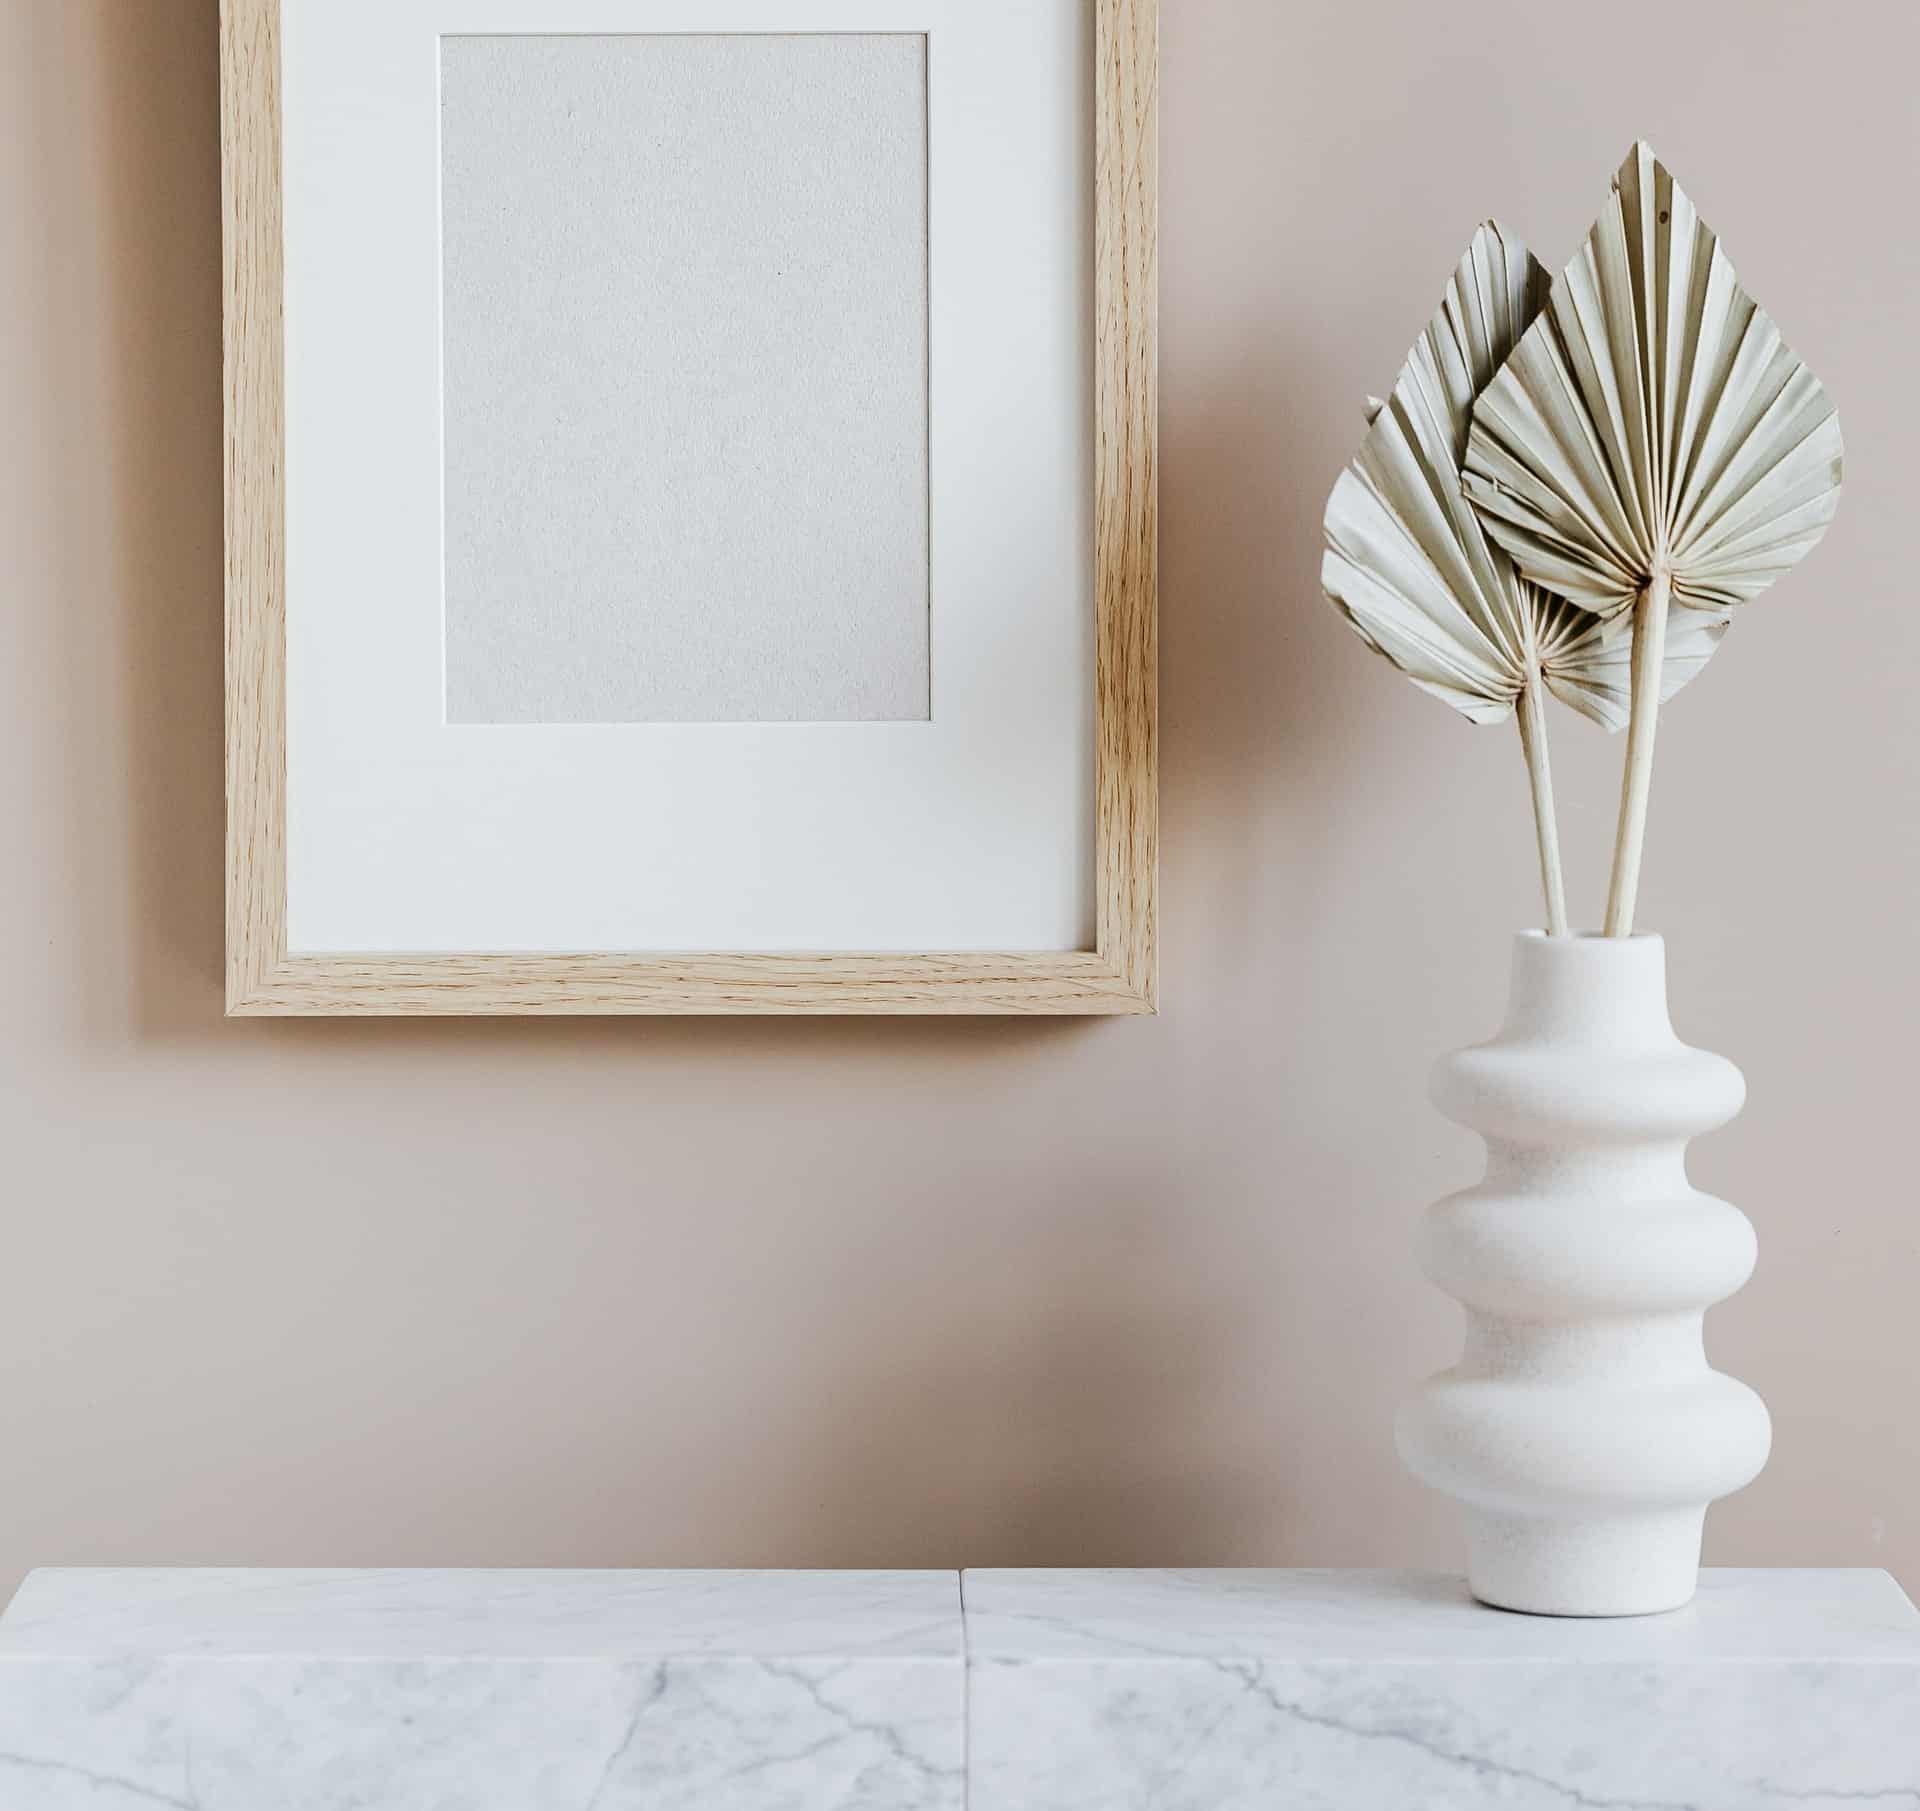 Nordisk indretning med fin hvid vase på marmor bordplade og billedramme i træ.